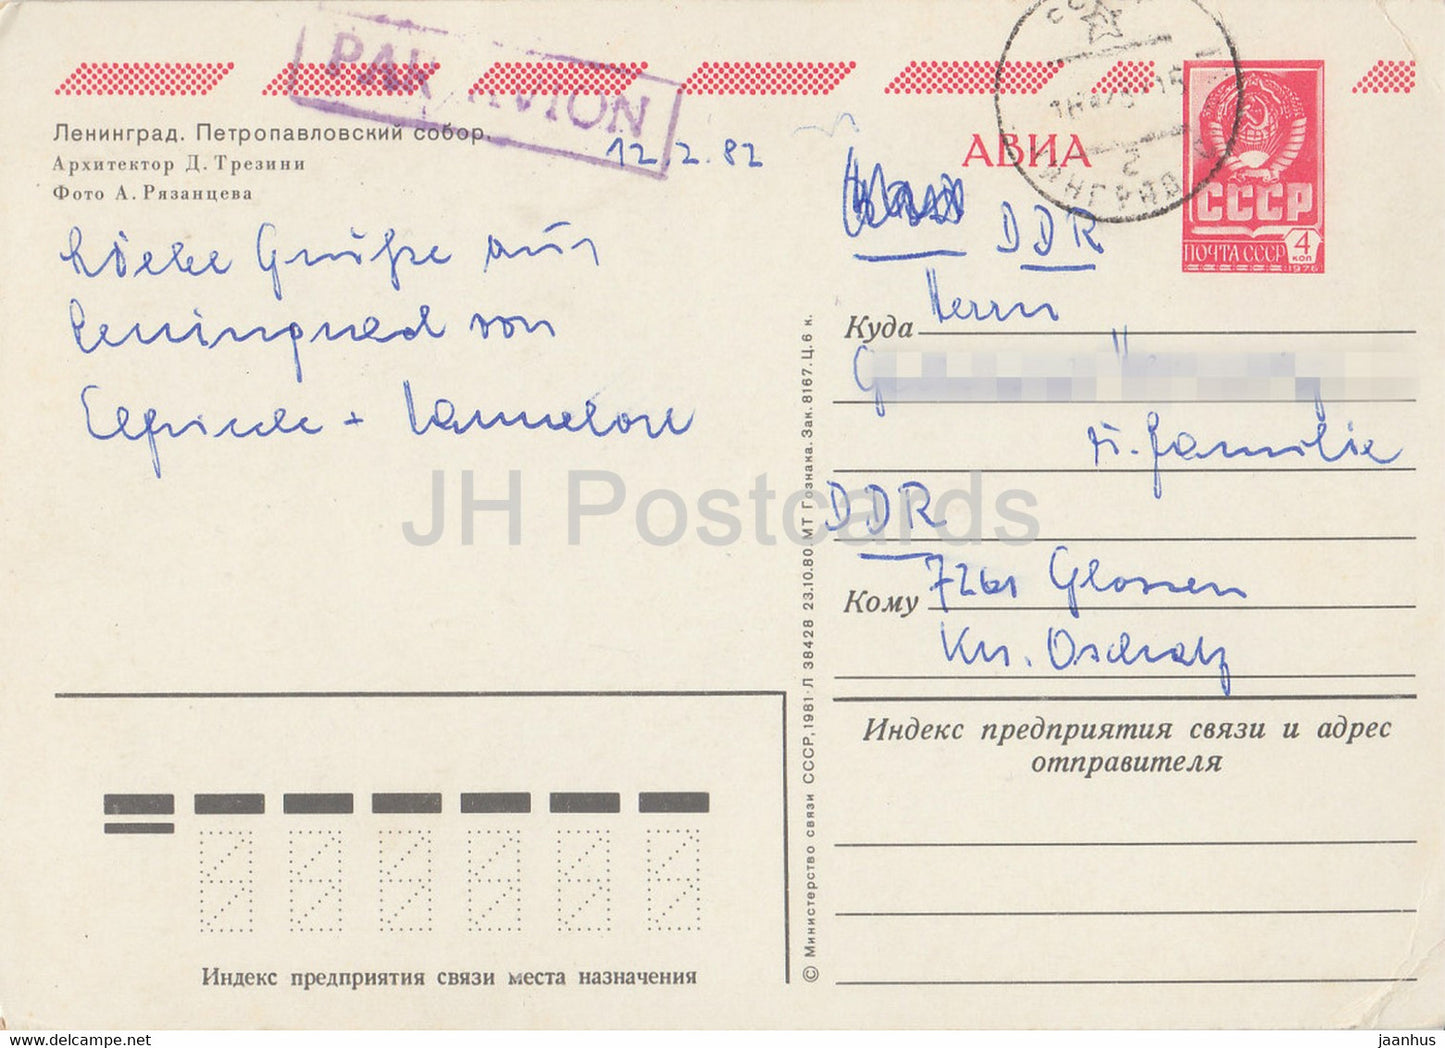 Leningrad - Saint-Pétersbourg - Cathédrale Pierre et Paul - AVIA - entier postal - 1981 - Russie URSS - utilisé